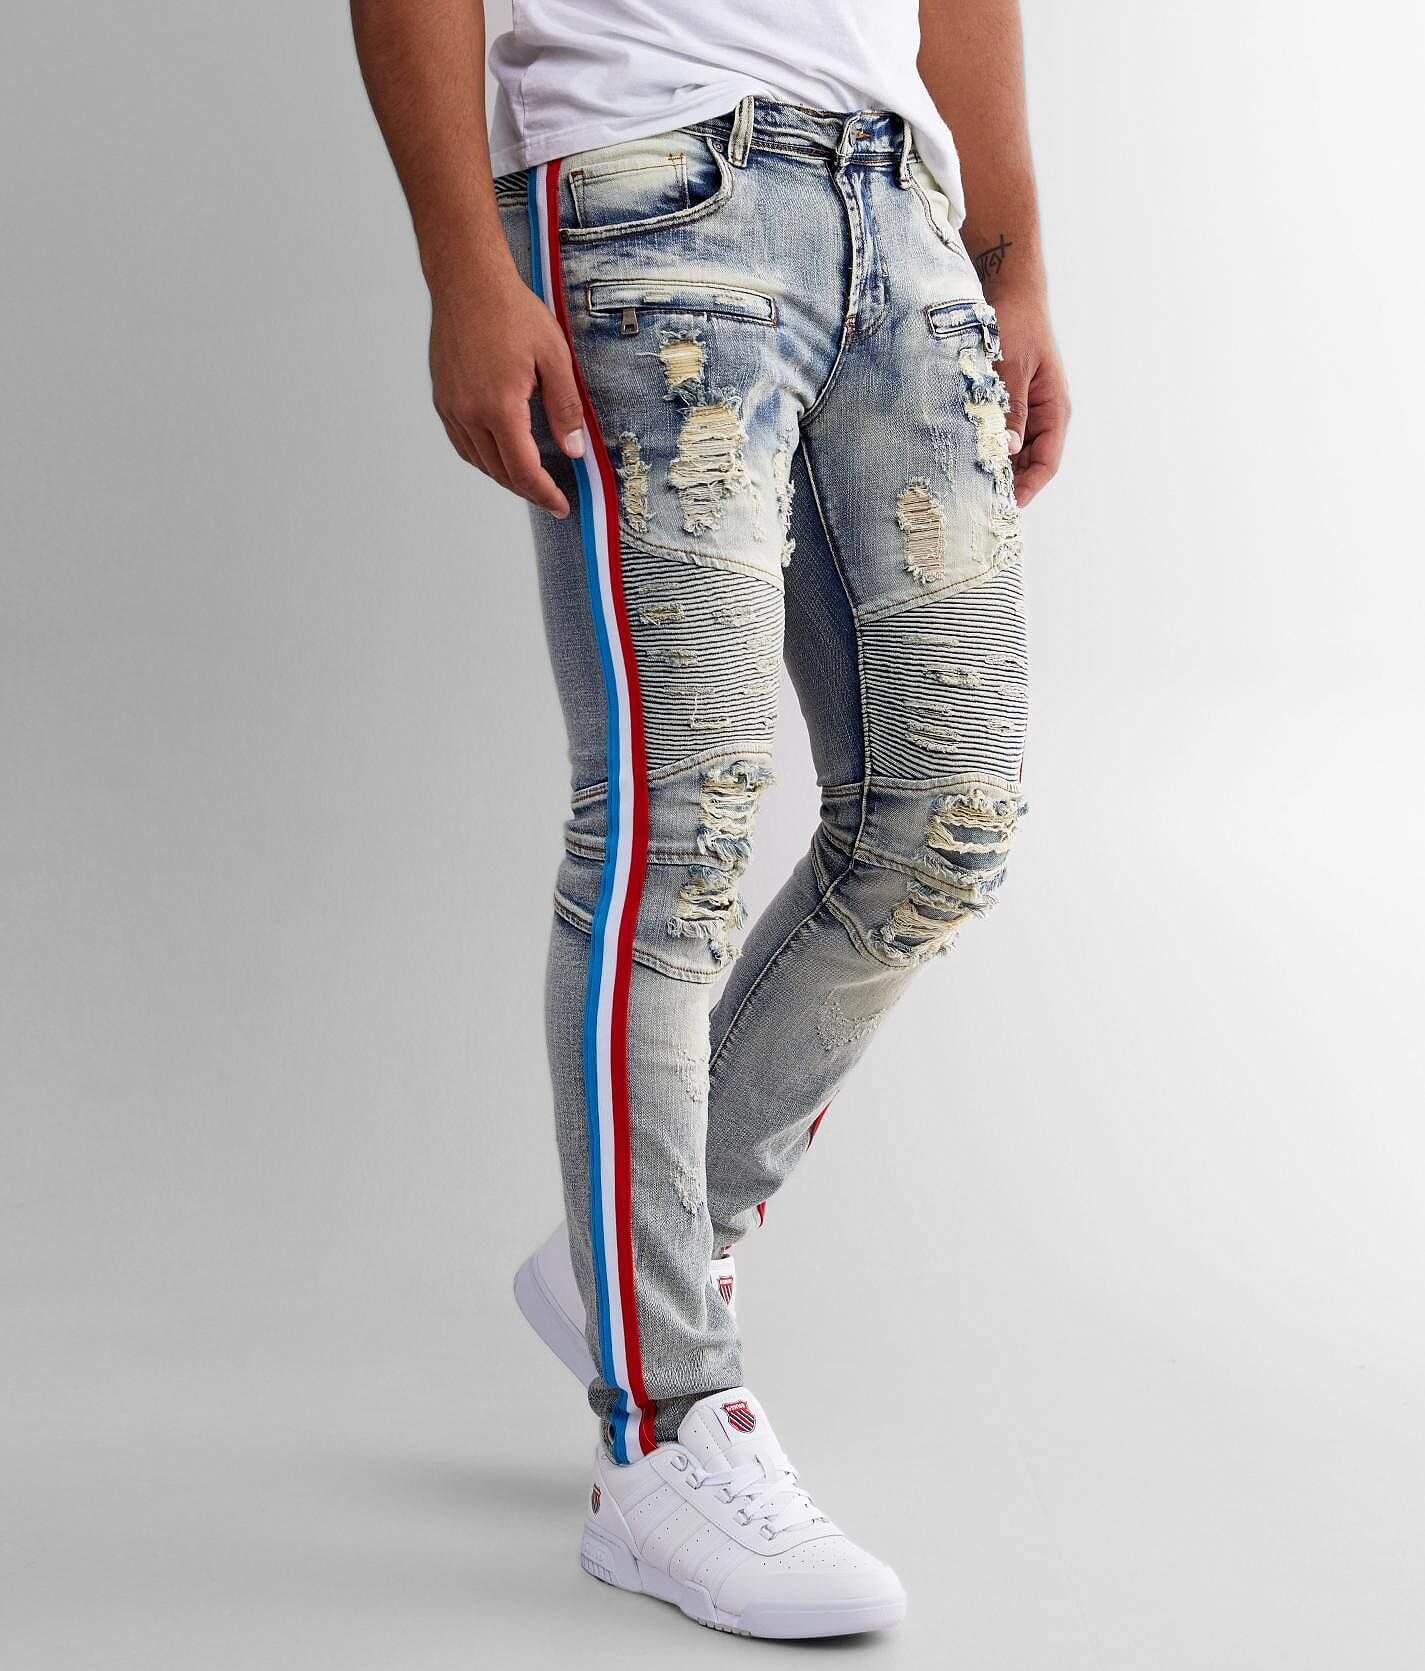 PREME Moto Side Stripe Skinny Stretch Jean - Men's Jeans in Male 